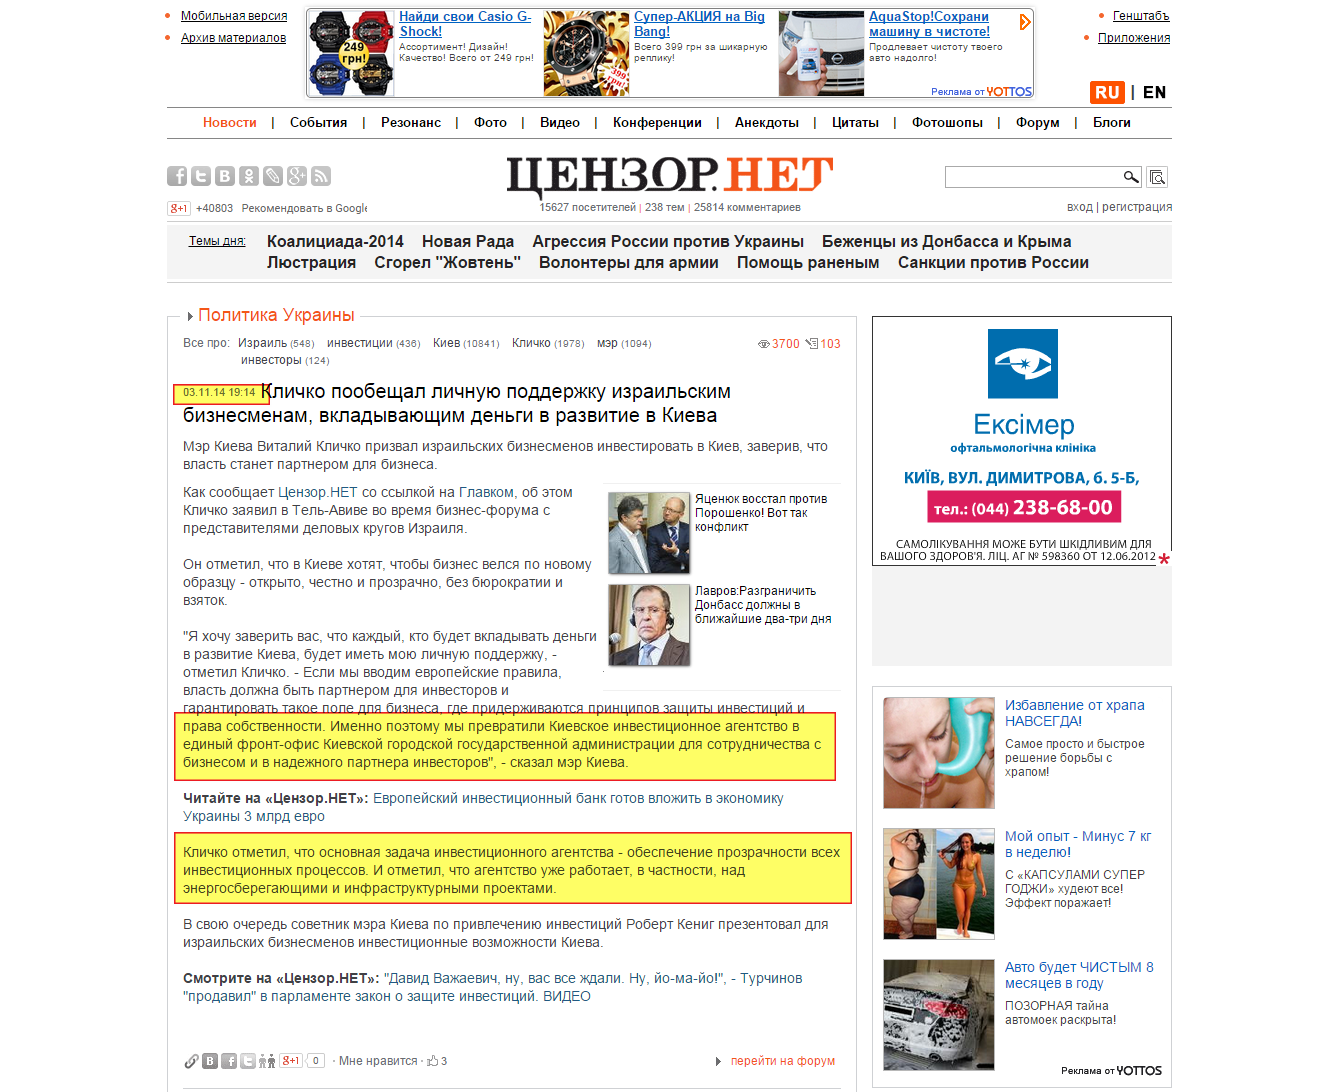 http://censor.net.ua/news/310120/klichko_poobeschal_lichnuyu_podderjku_izrailskim_biznesmenam_vkladyvayuschim_dengi_v_razvitie_v_kieva